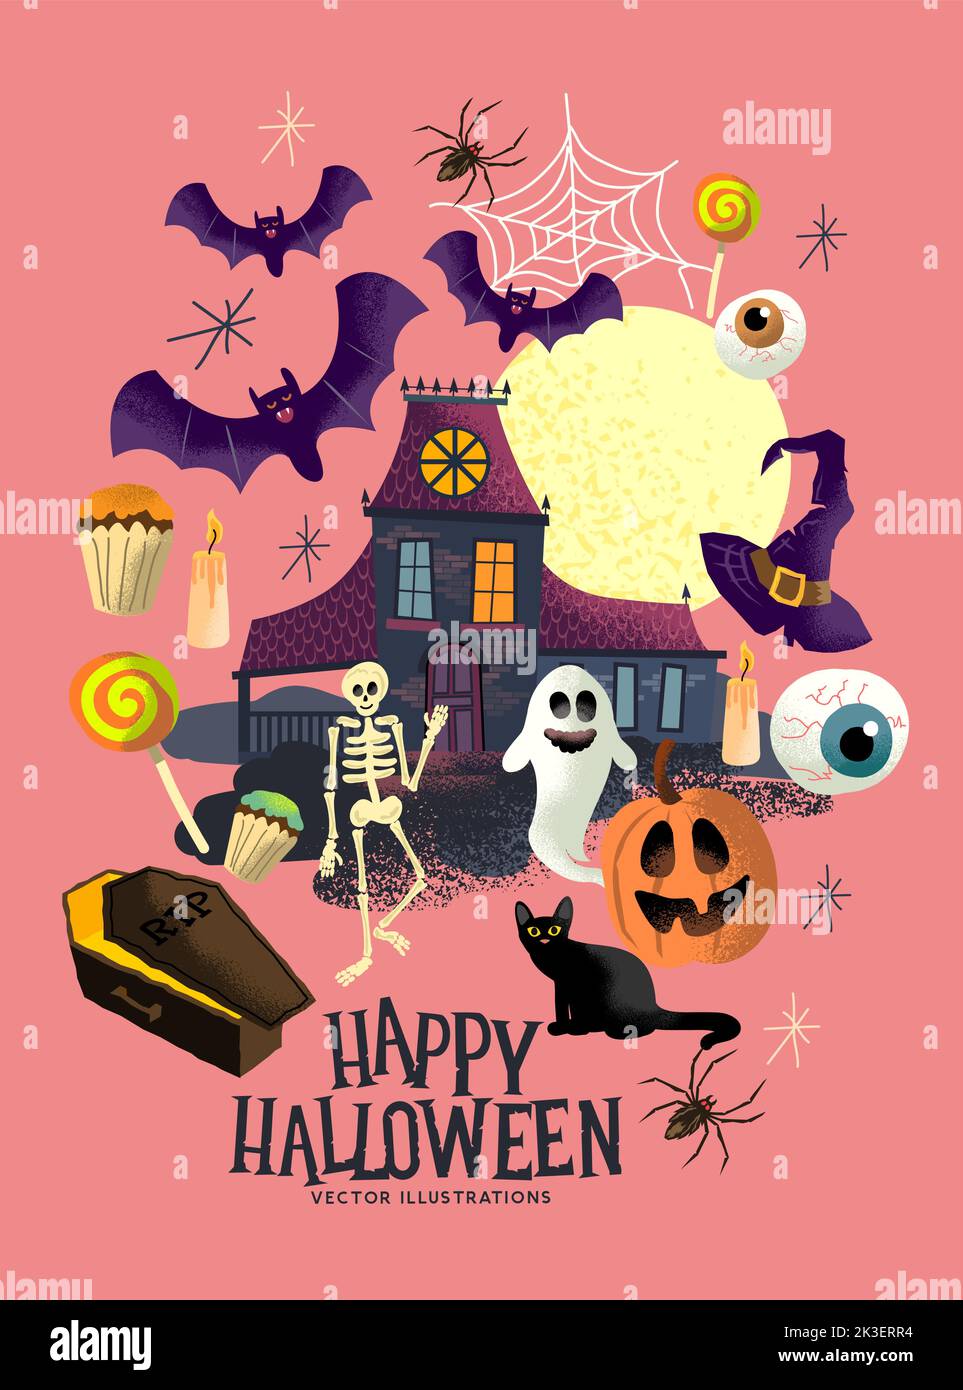 Eine Sammlung von Trick or Treat halloween-Event-Figuren und -Objekten mit Geistern, Kürbissen und einem Geisterhaus. Stock Vektor